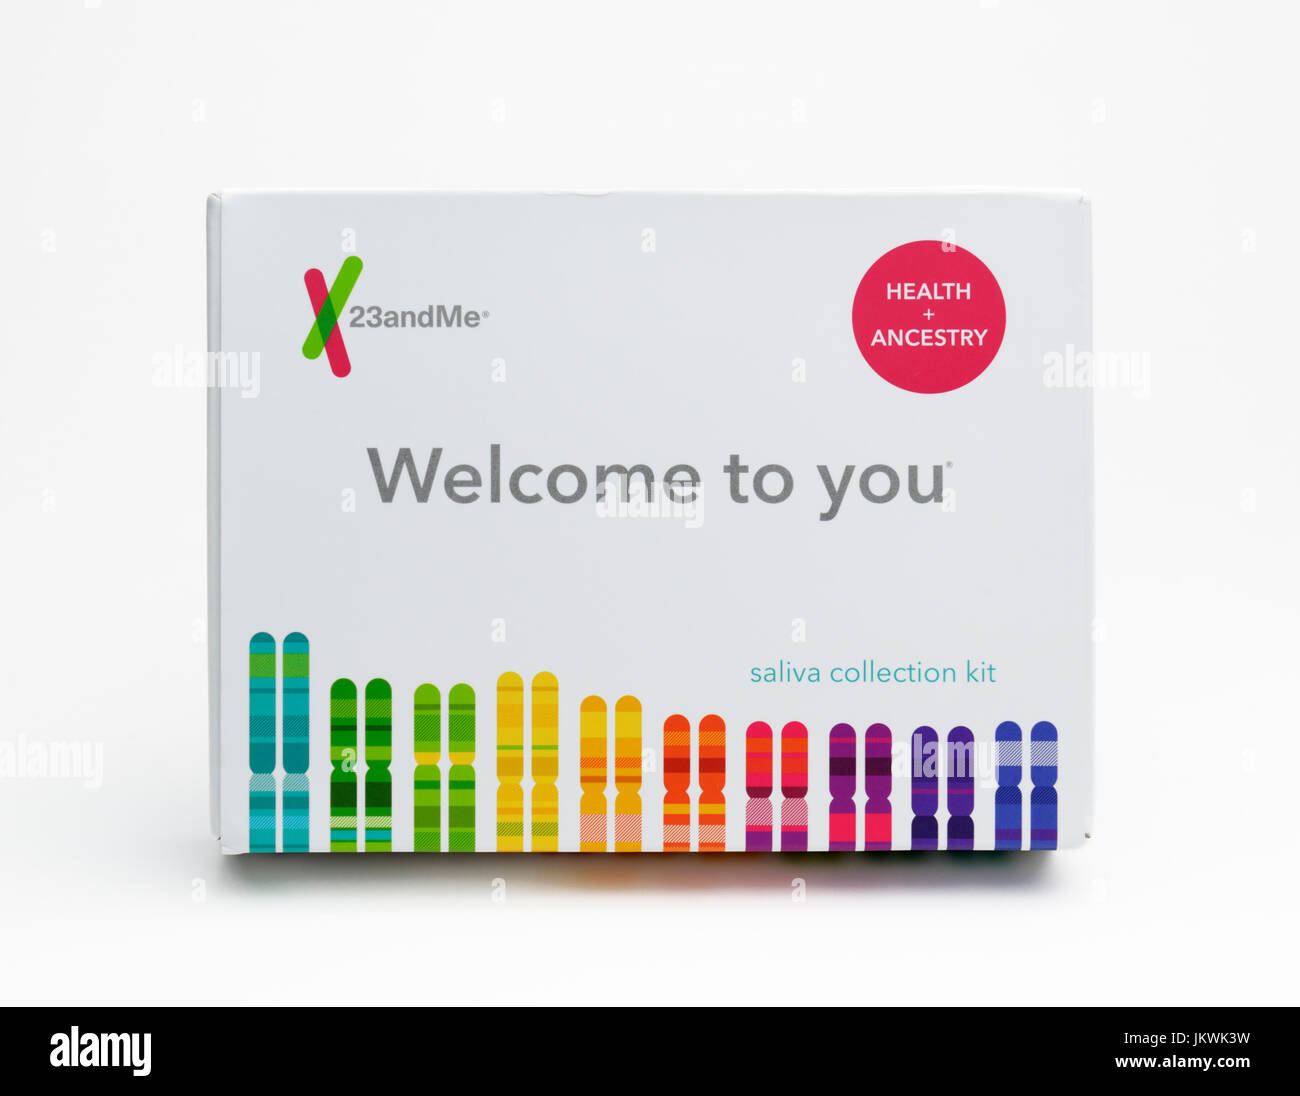 Consommer la collecte de salive accueil kit de dépistage génétique de l'origine et les gènes de la santé Banque D'Images